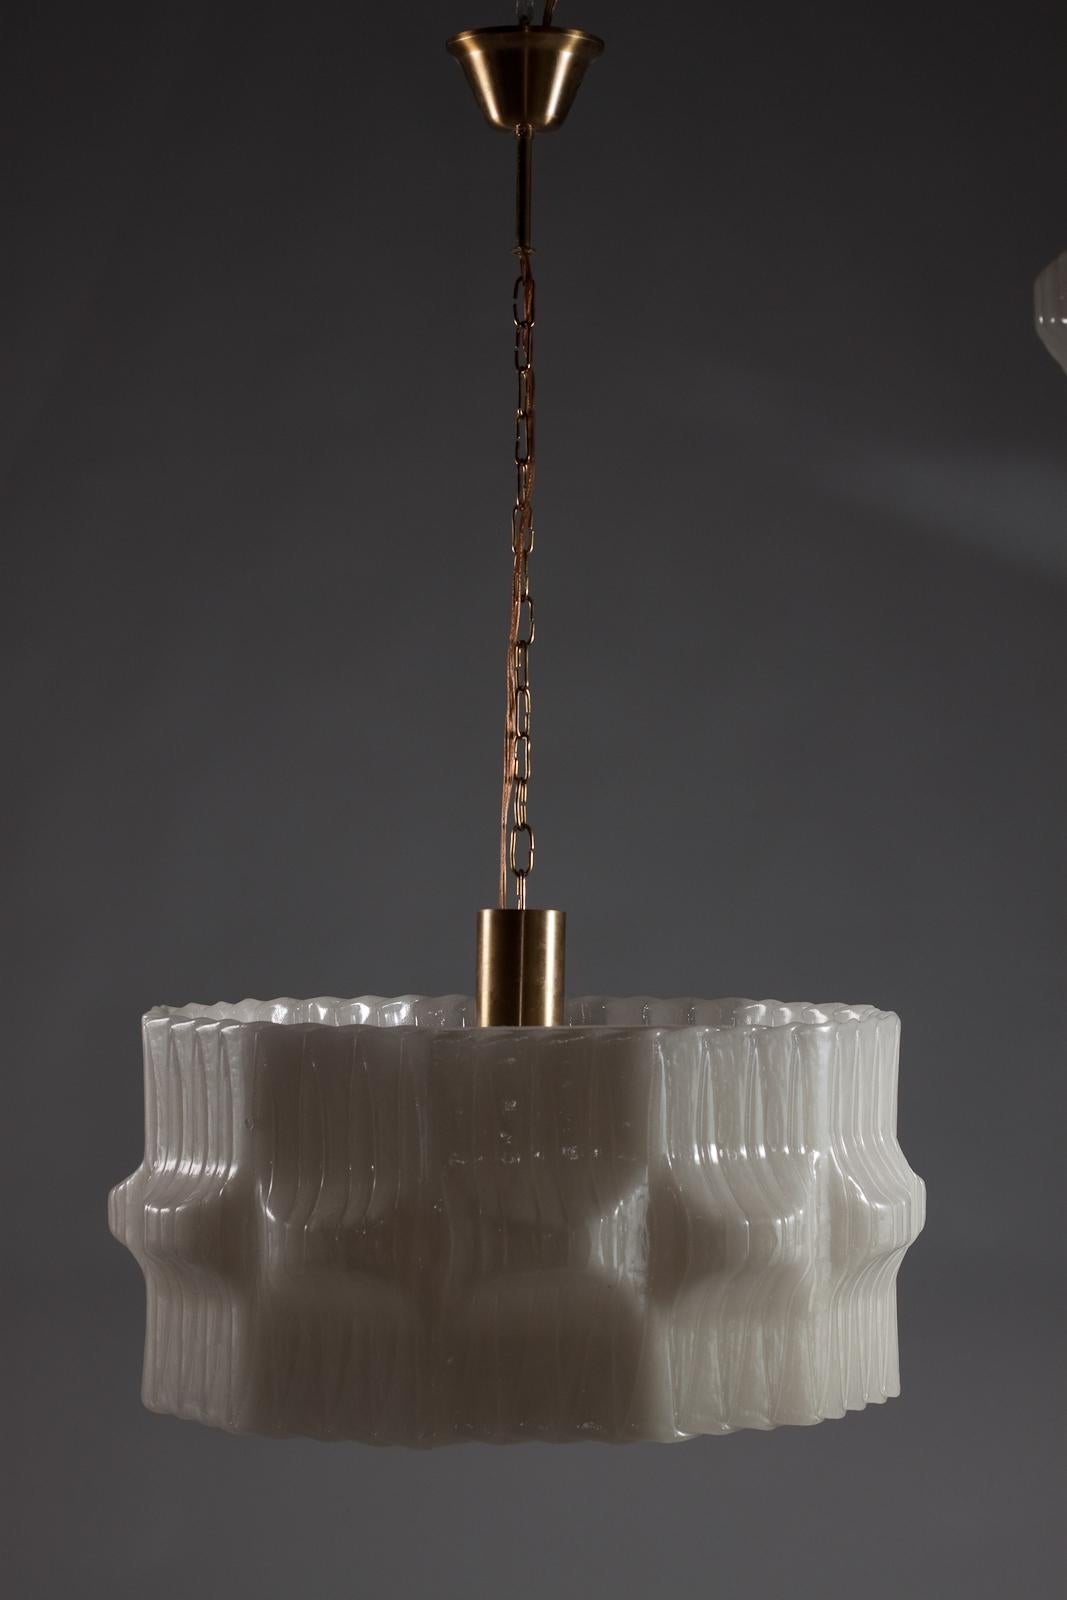 Cette lampe suspendue Valinte Oy est un véritable bijou vintage des années 1970, originaire de Finlande. Cette grande lampe suspendue en acrylique présente une finition opaline, créant une lueur douce et séduisante lorsqu'elle est éclairée. Son